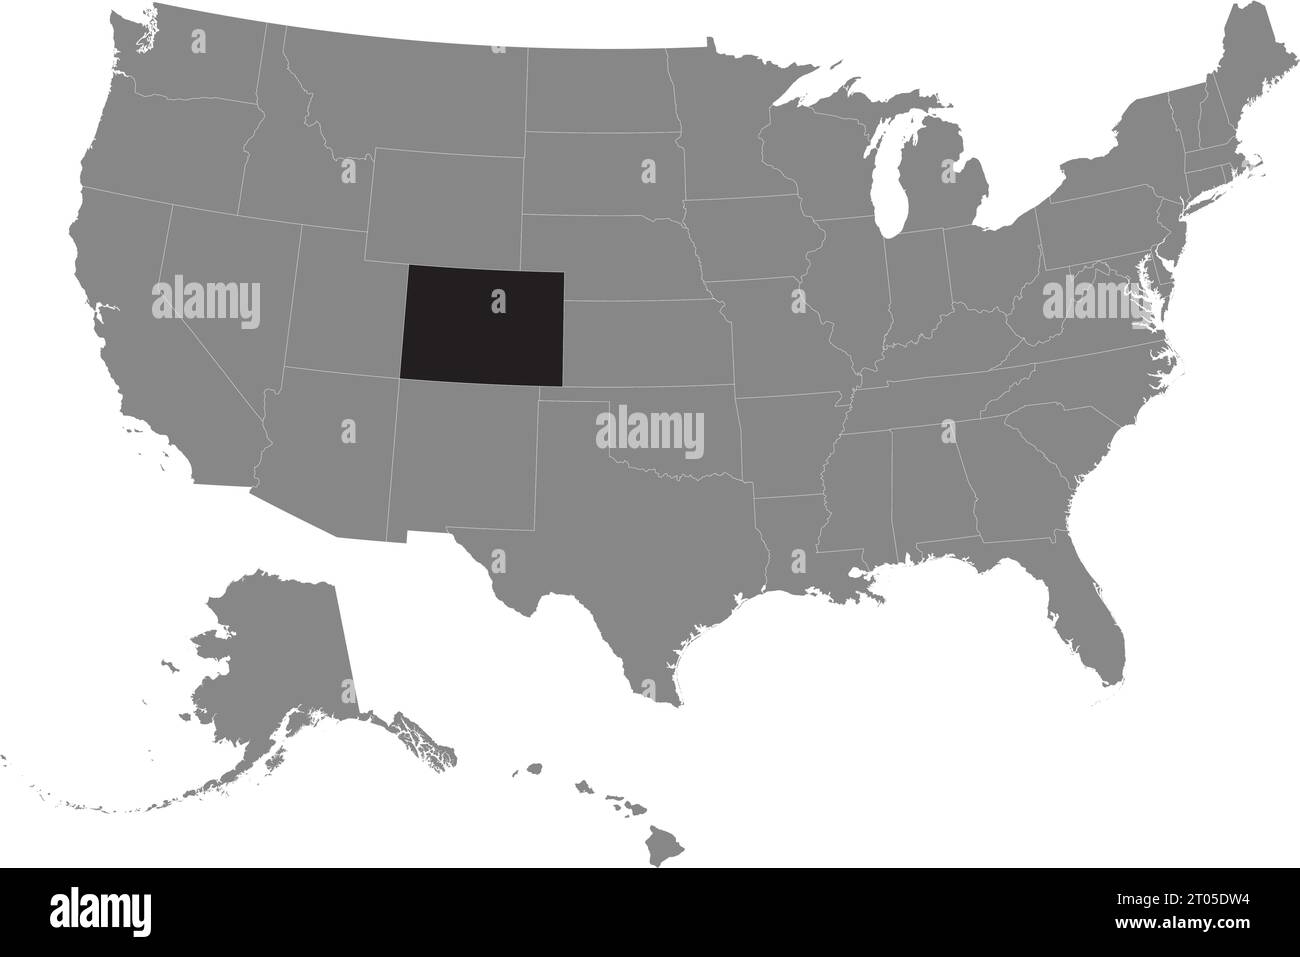 Schwarze CMYK-Bundeskarte von COLORADO in detaillierter grauer, leerer politischer Karte der Vereinigten Staaten von Amerika auf transparentem Hintergrund Stock Vektor